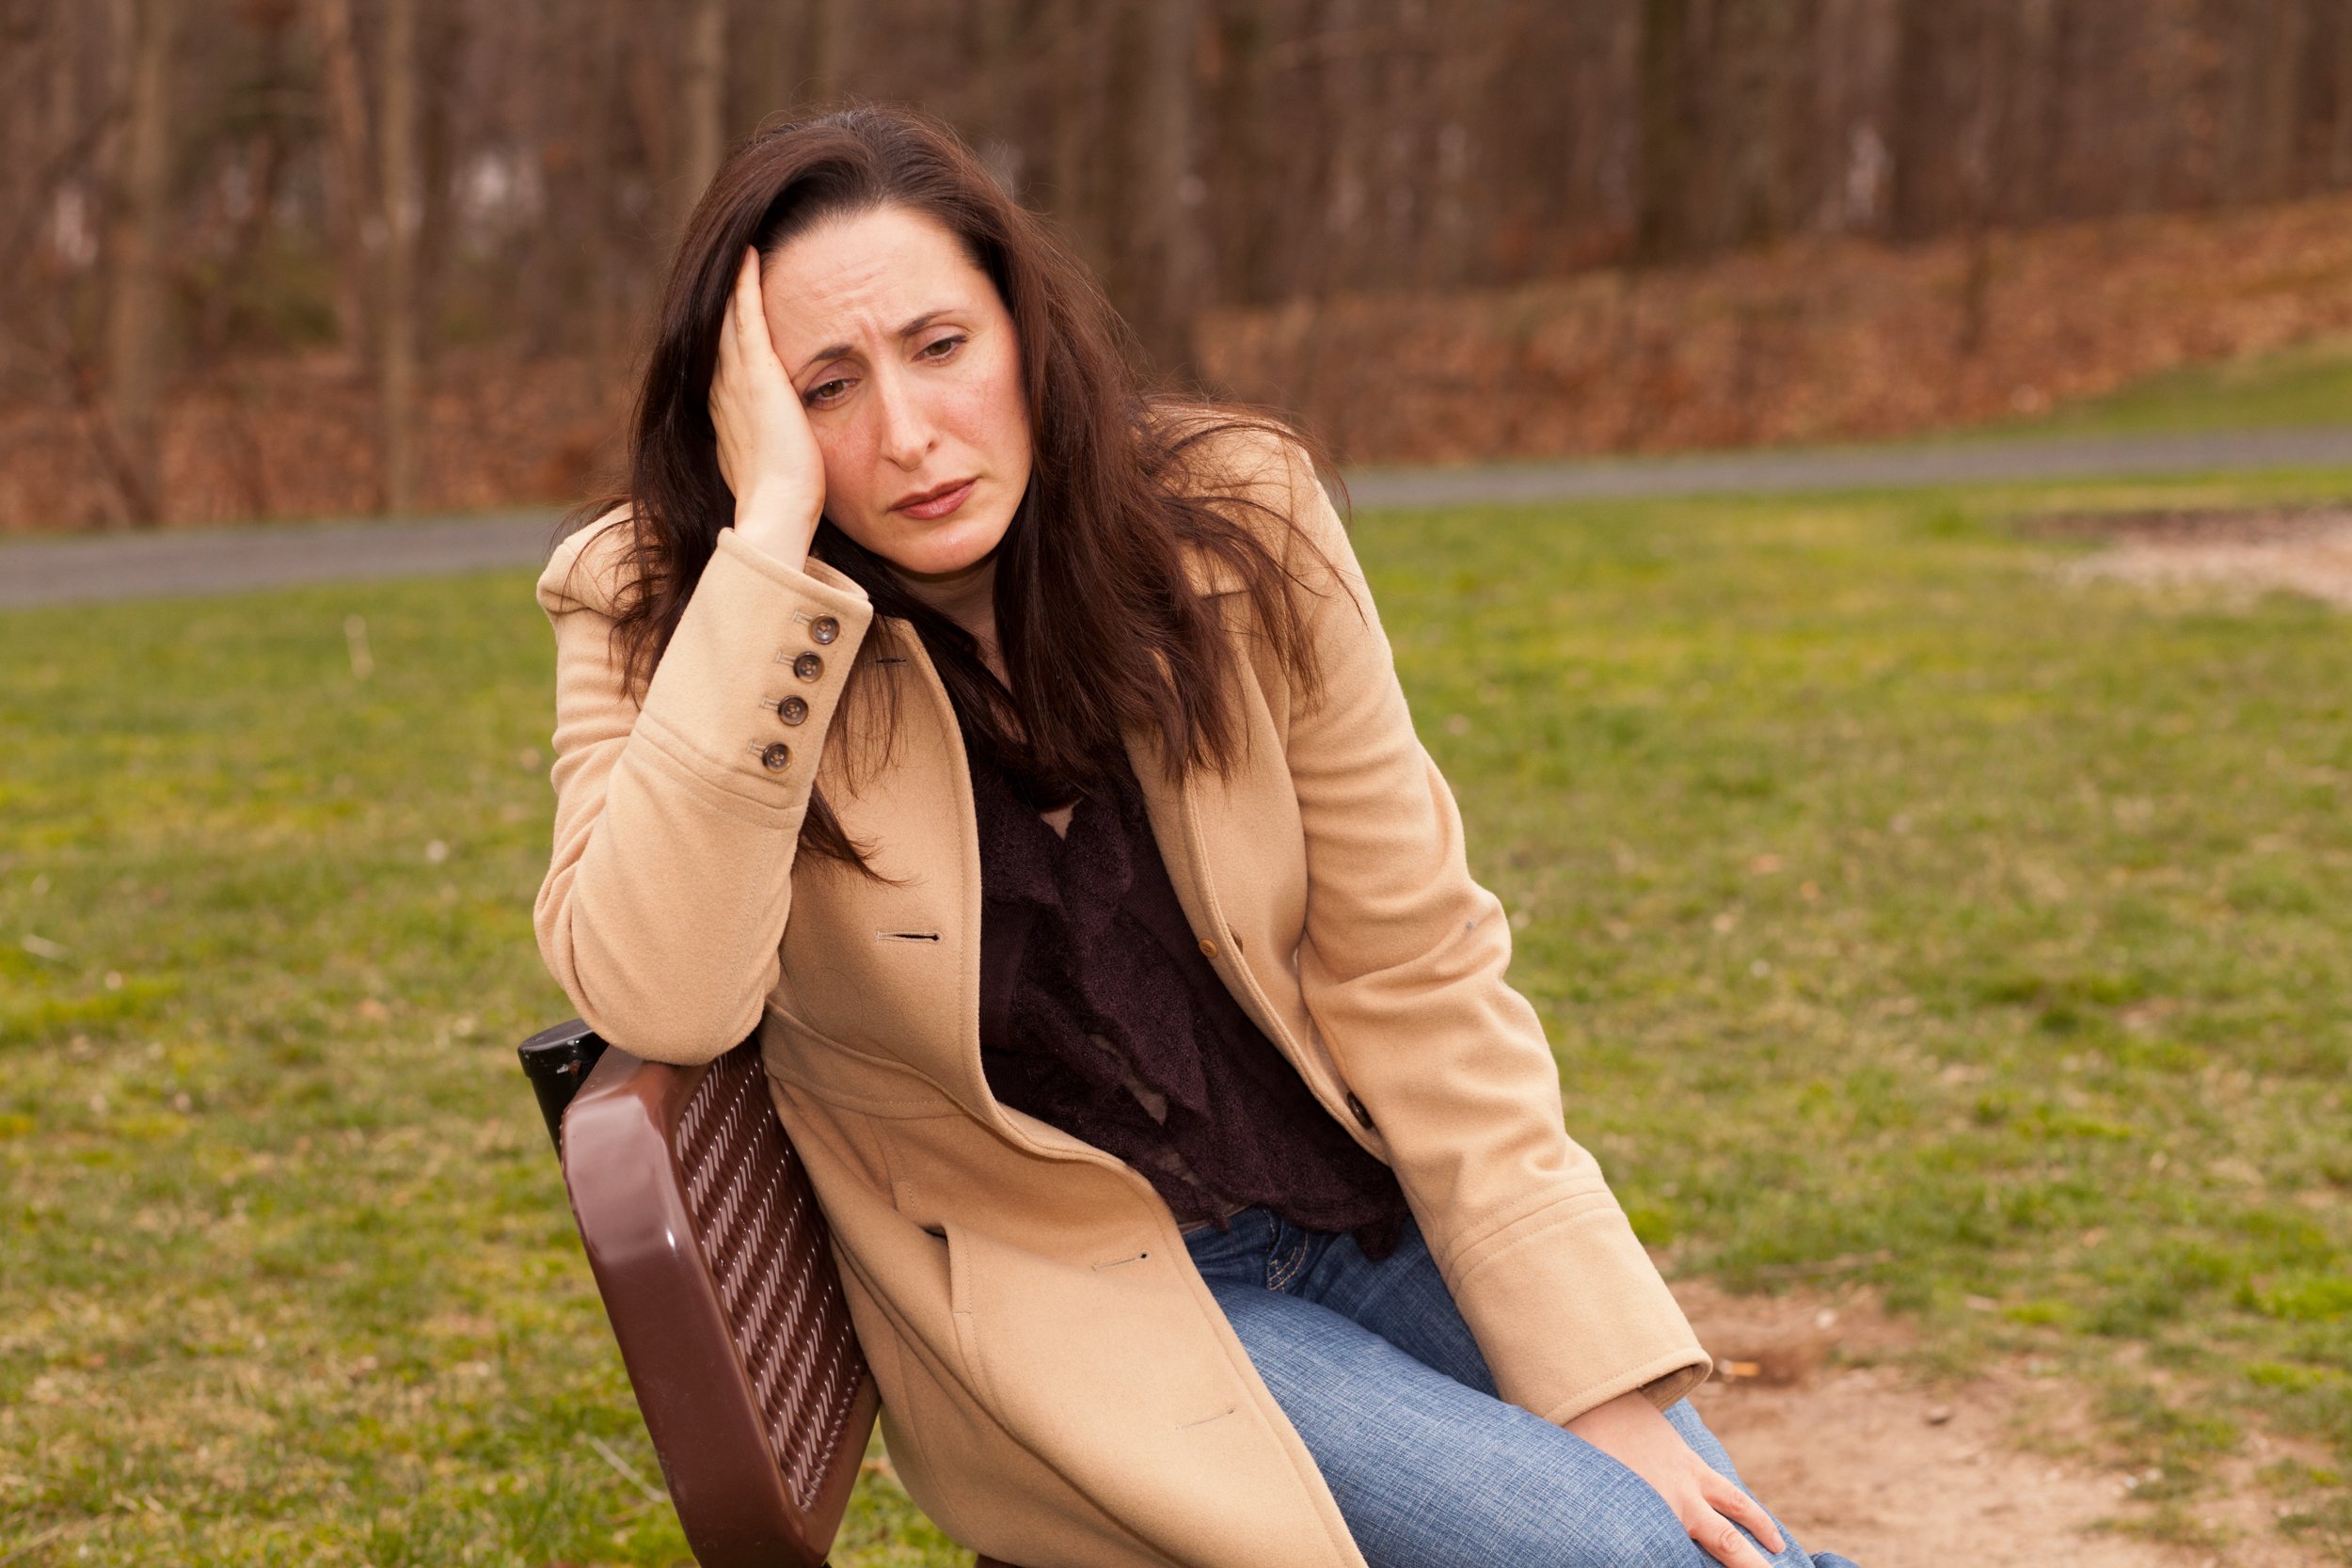 Traurige Frau sitzt auf einer Bank in einem Mantel und sieht einsam aus | Quelle: Shutterstock